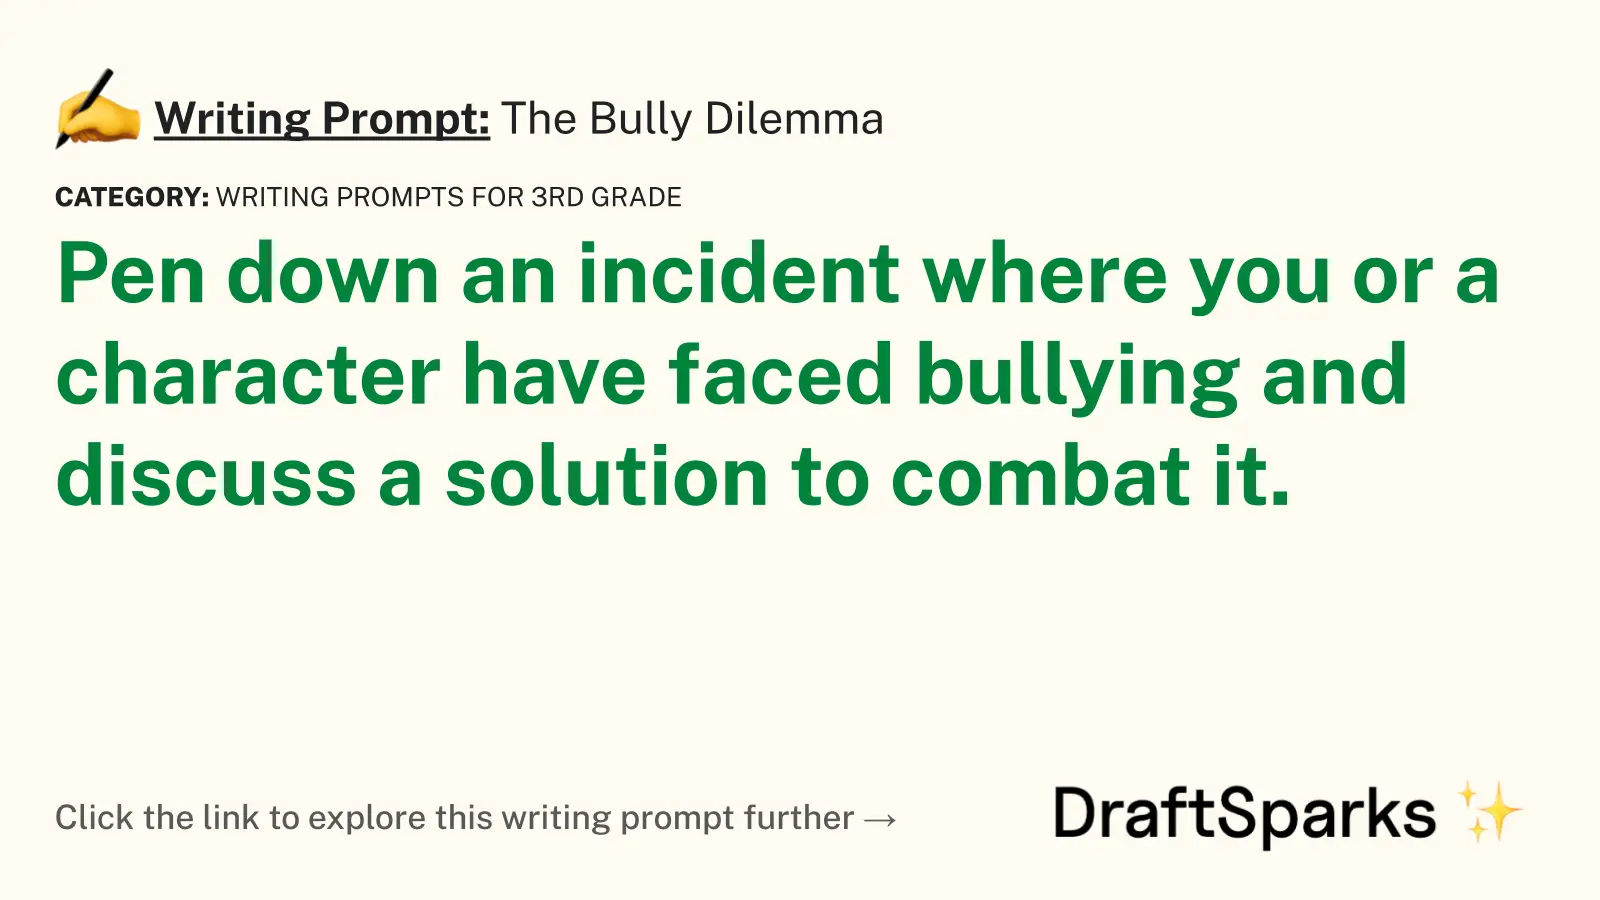 The Bully Dilemma